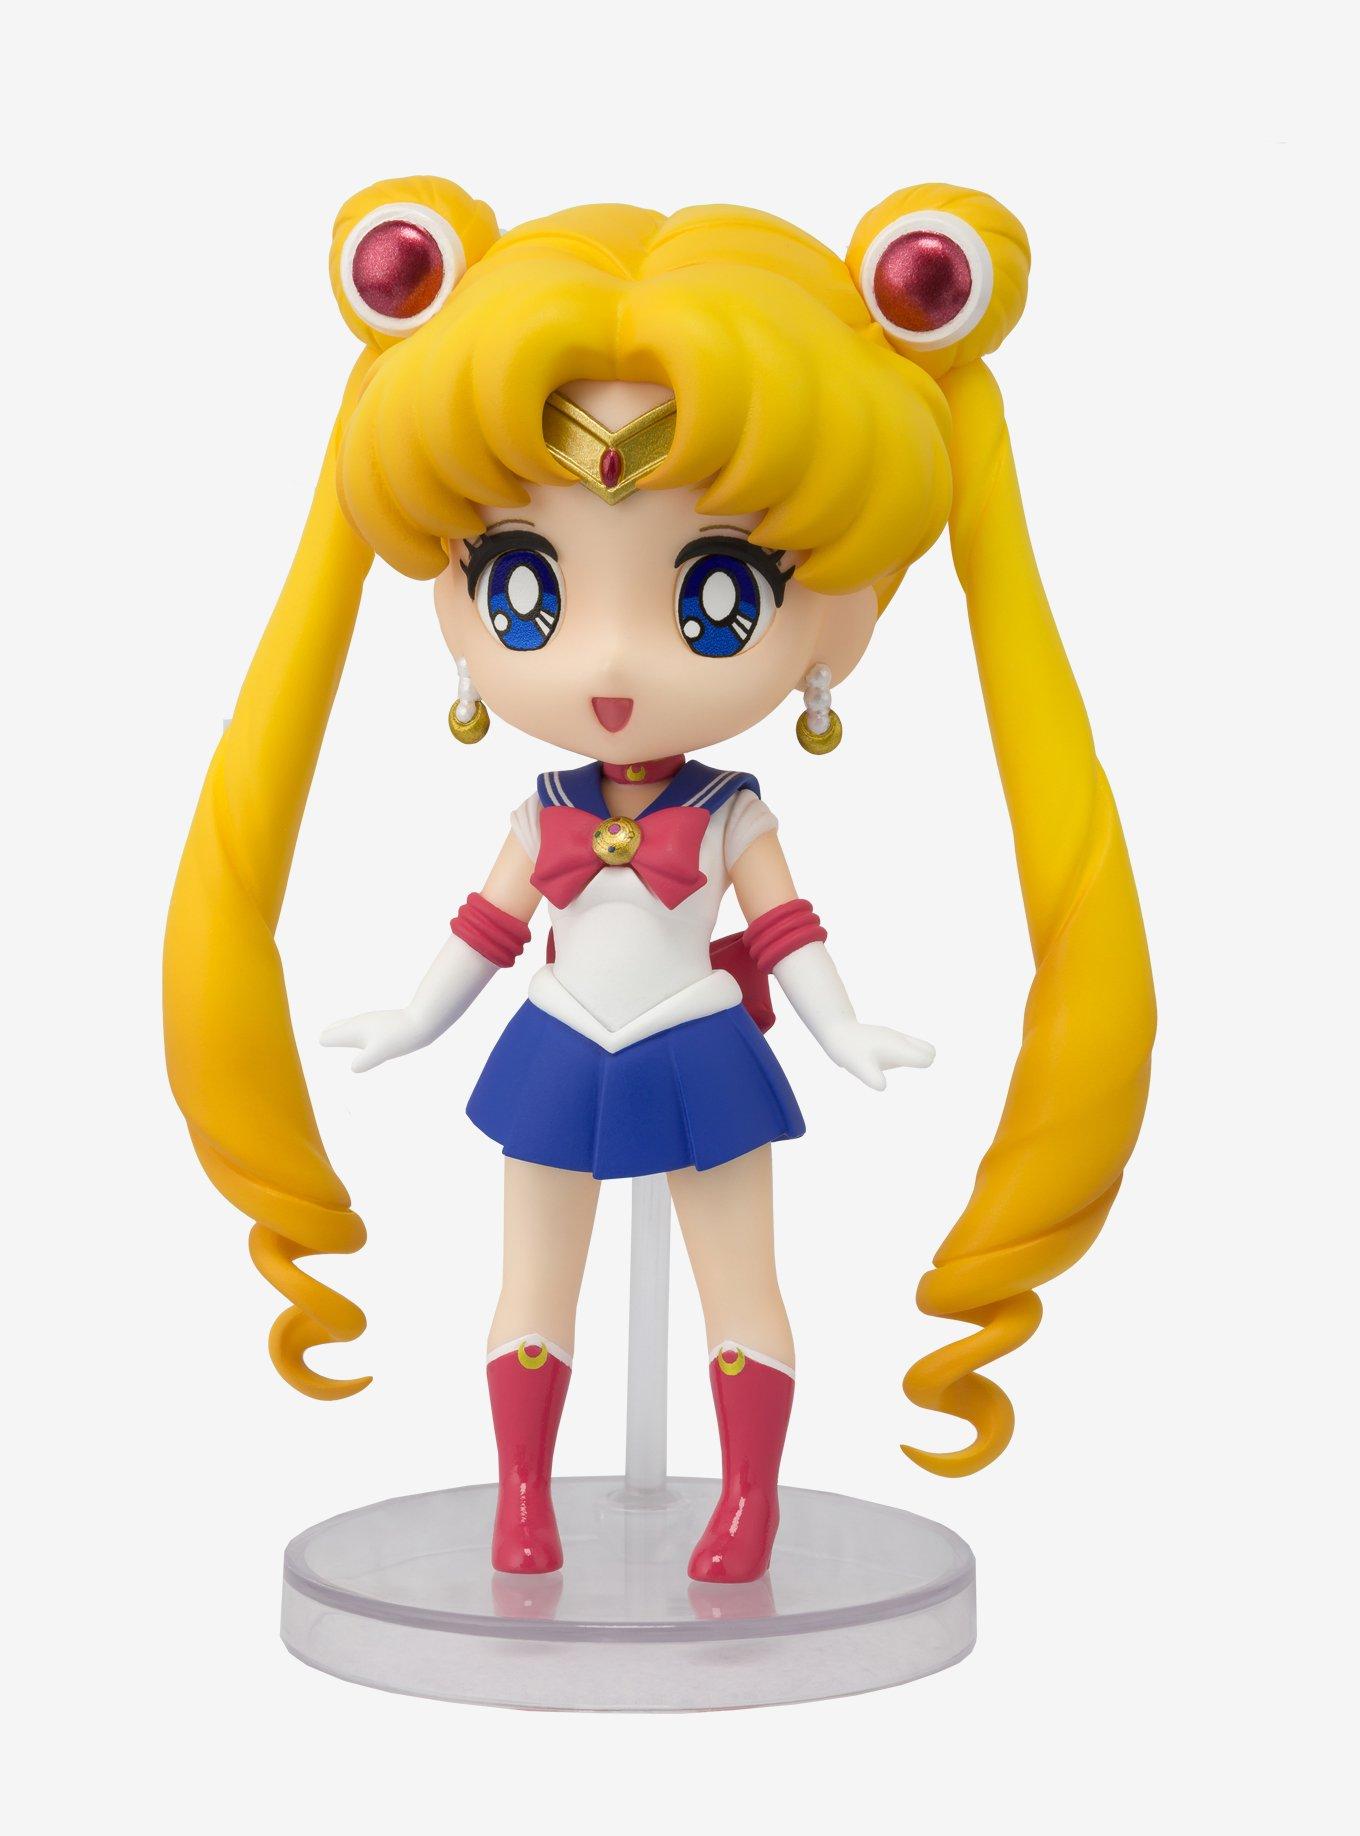 Bandai Spirits Sailor Moon Figuarts mini Sailor Moon Figure, , hi-res